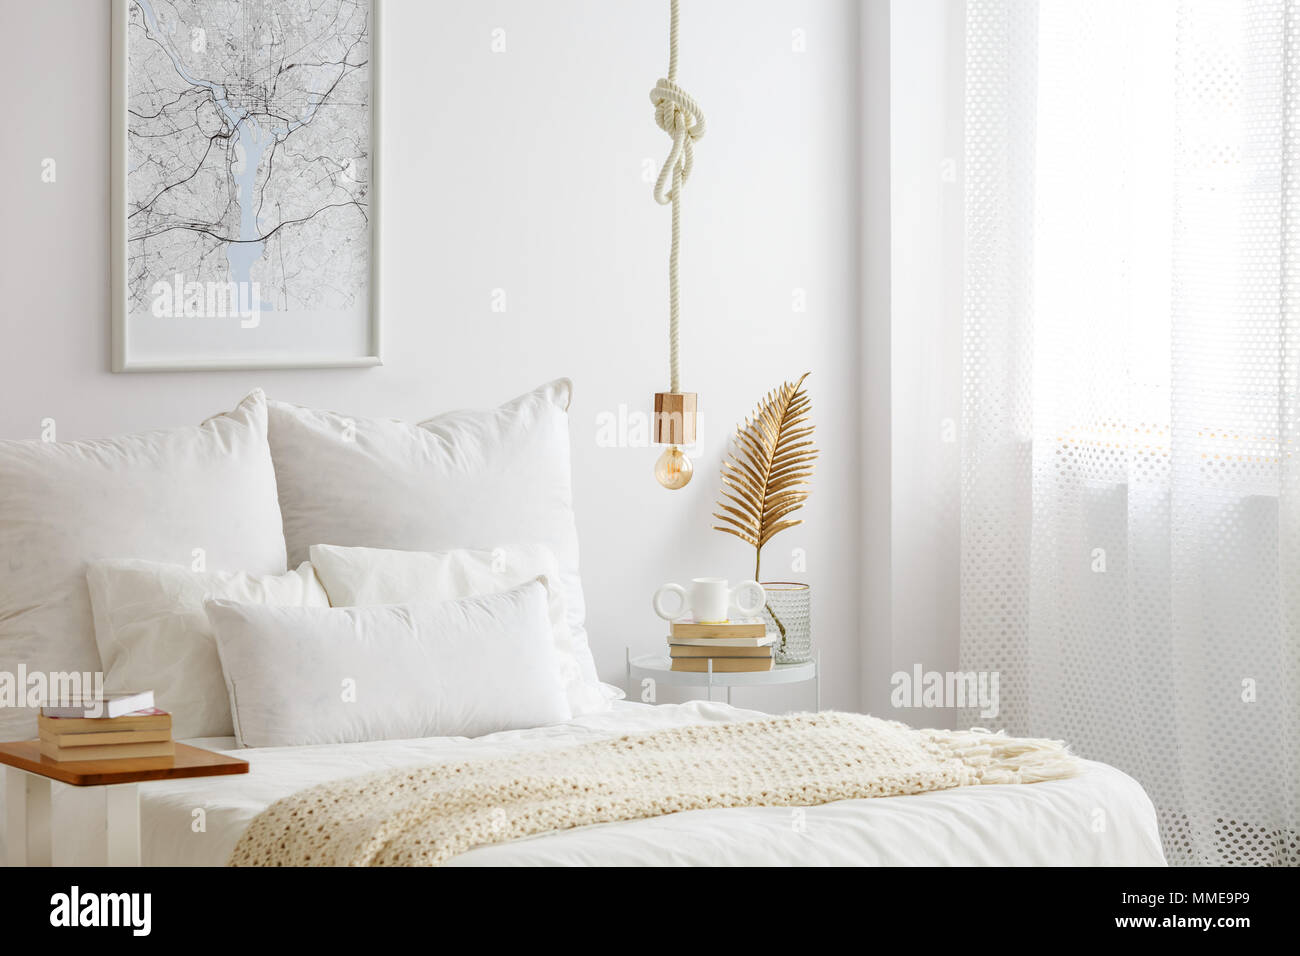 Una semplice lampada lampada su una corda appesa sopra il letto con  lenzuola bianche, libri e